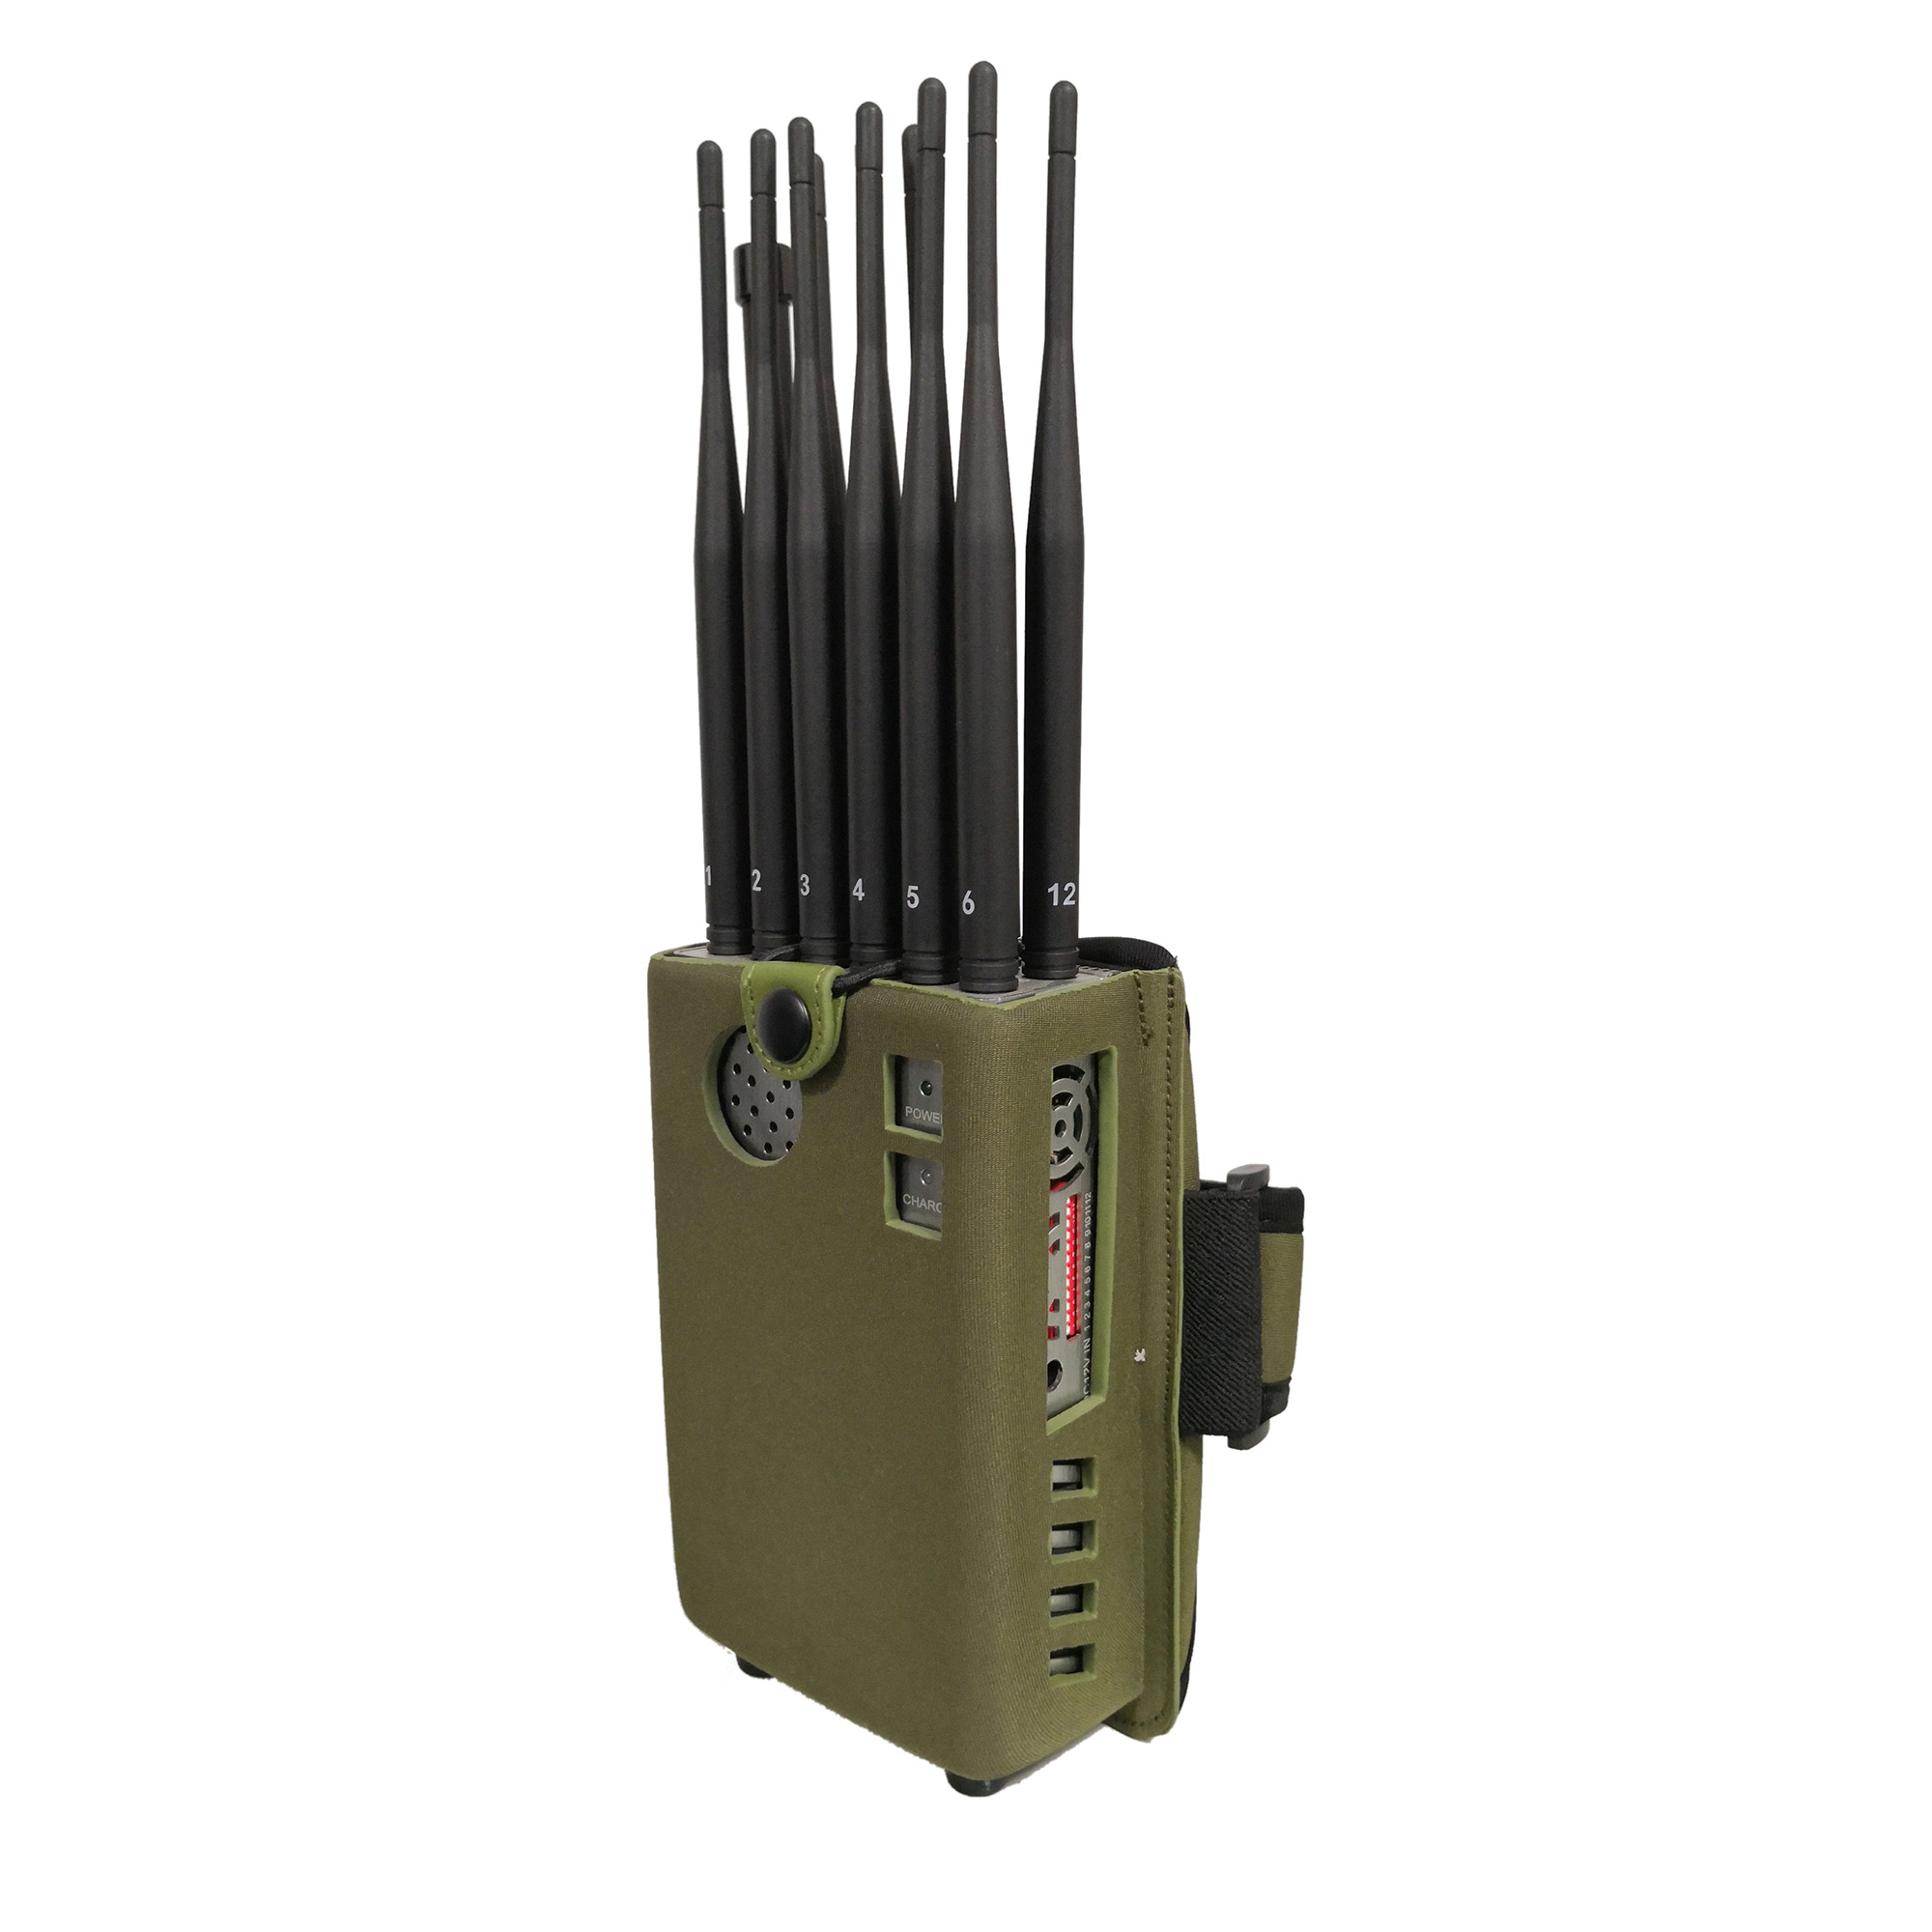 wireless signal jammer